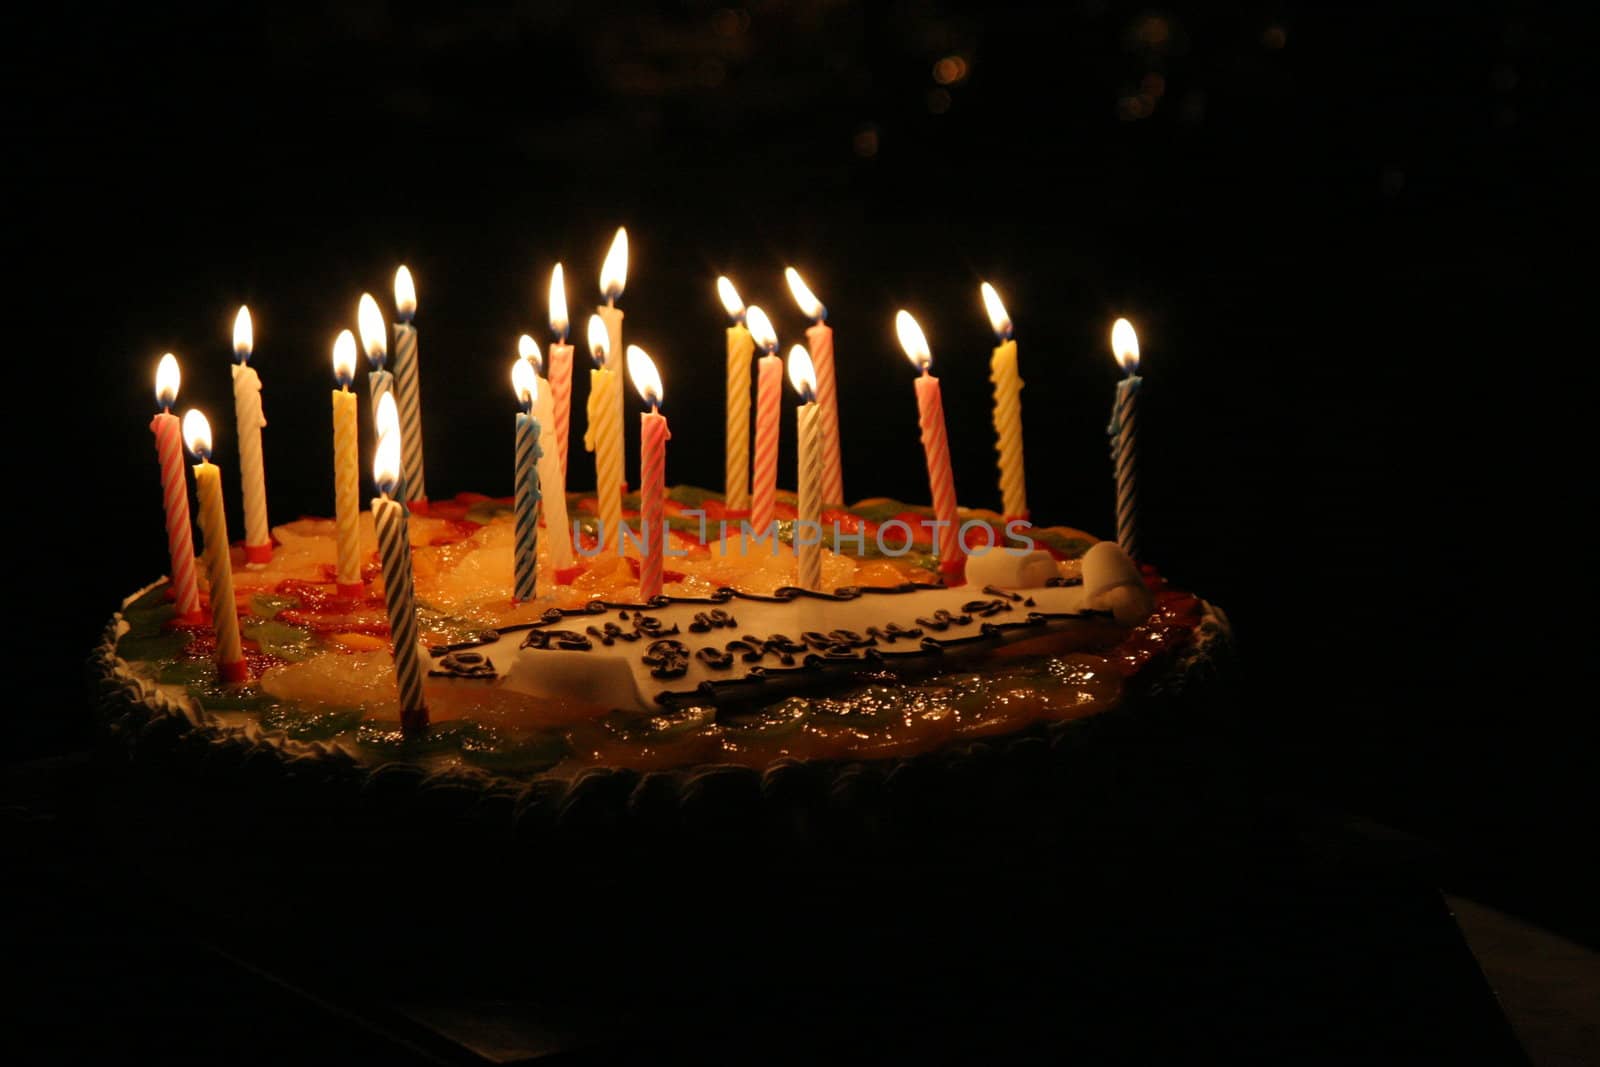 Pie "Happy birthday"